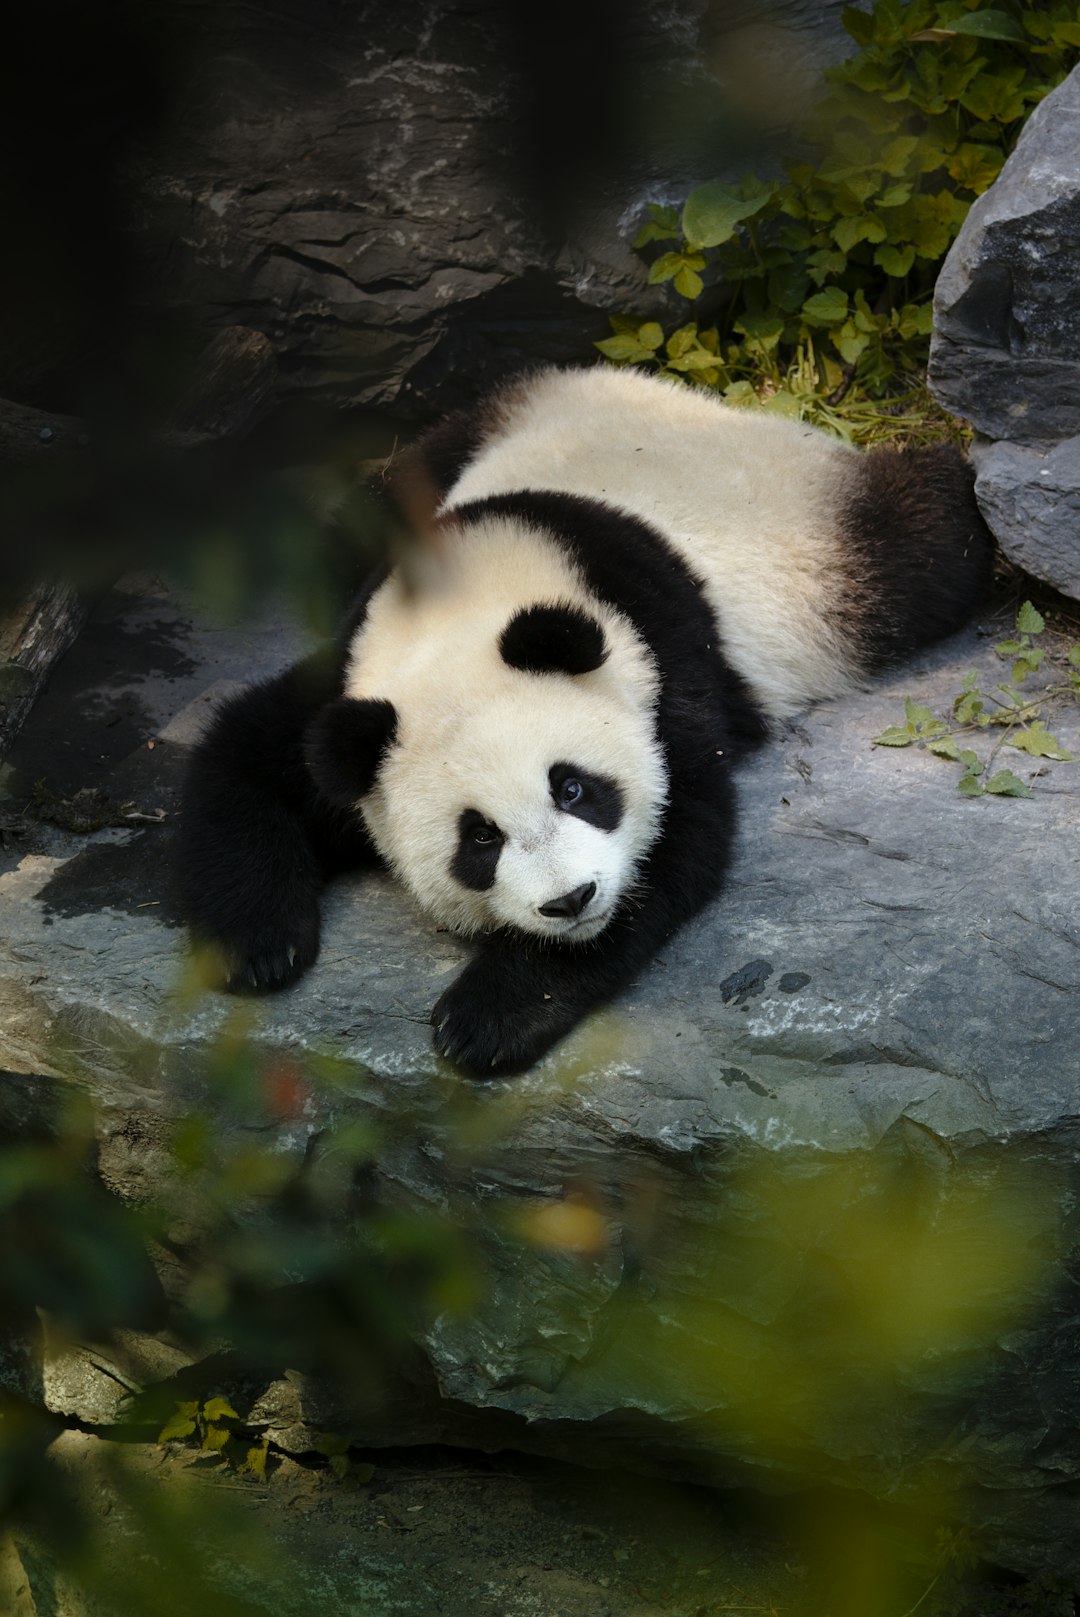  panda on water during daytime panda